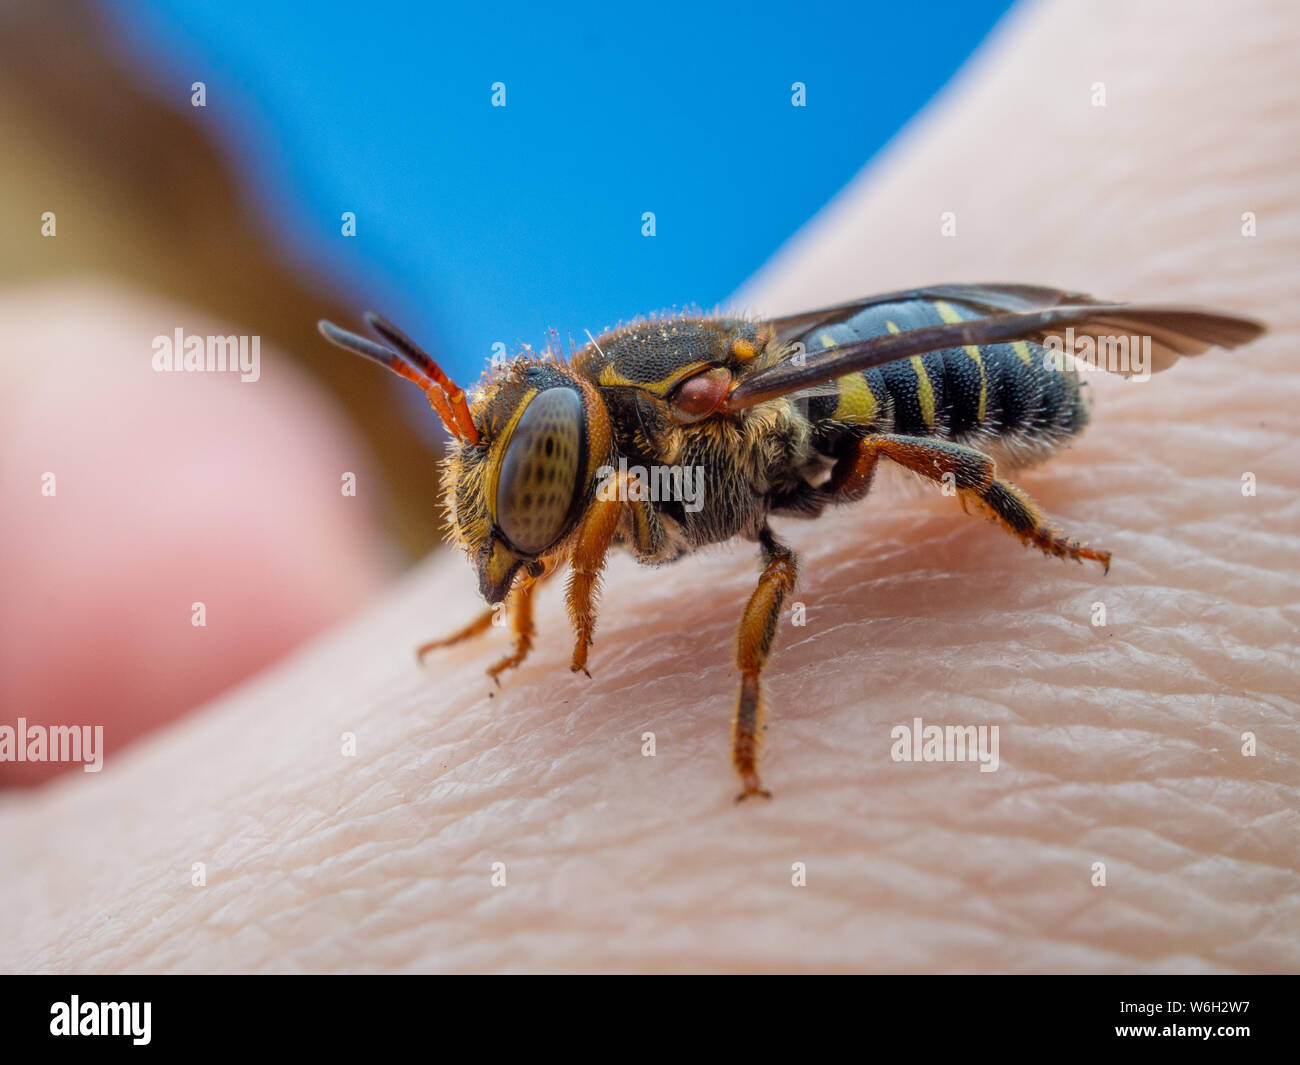 Detaillierte Makro einer wilden Biene aus Brasilien, lokal bekannt als abelha cortadeira Stockfoto